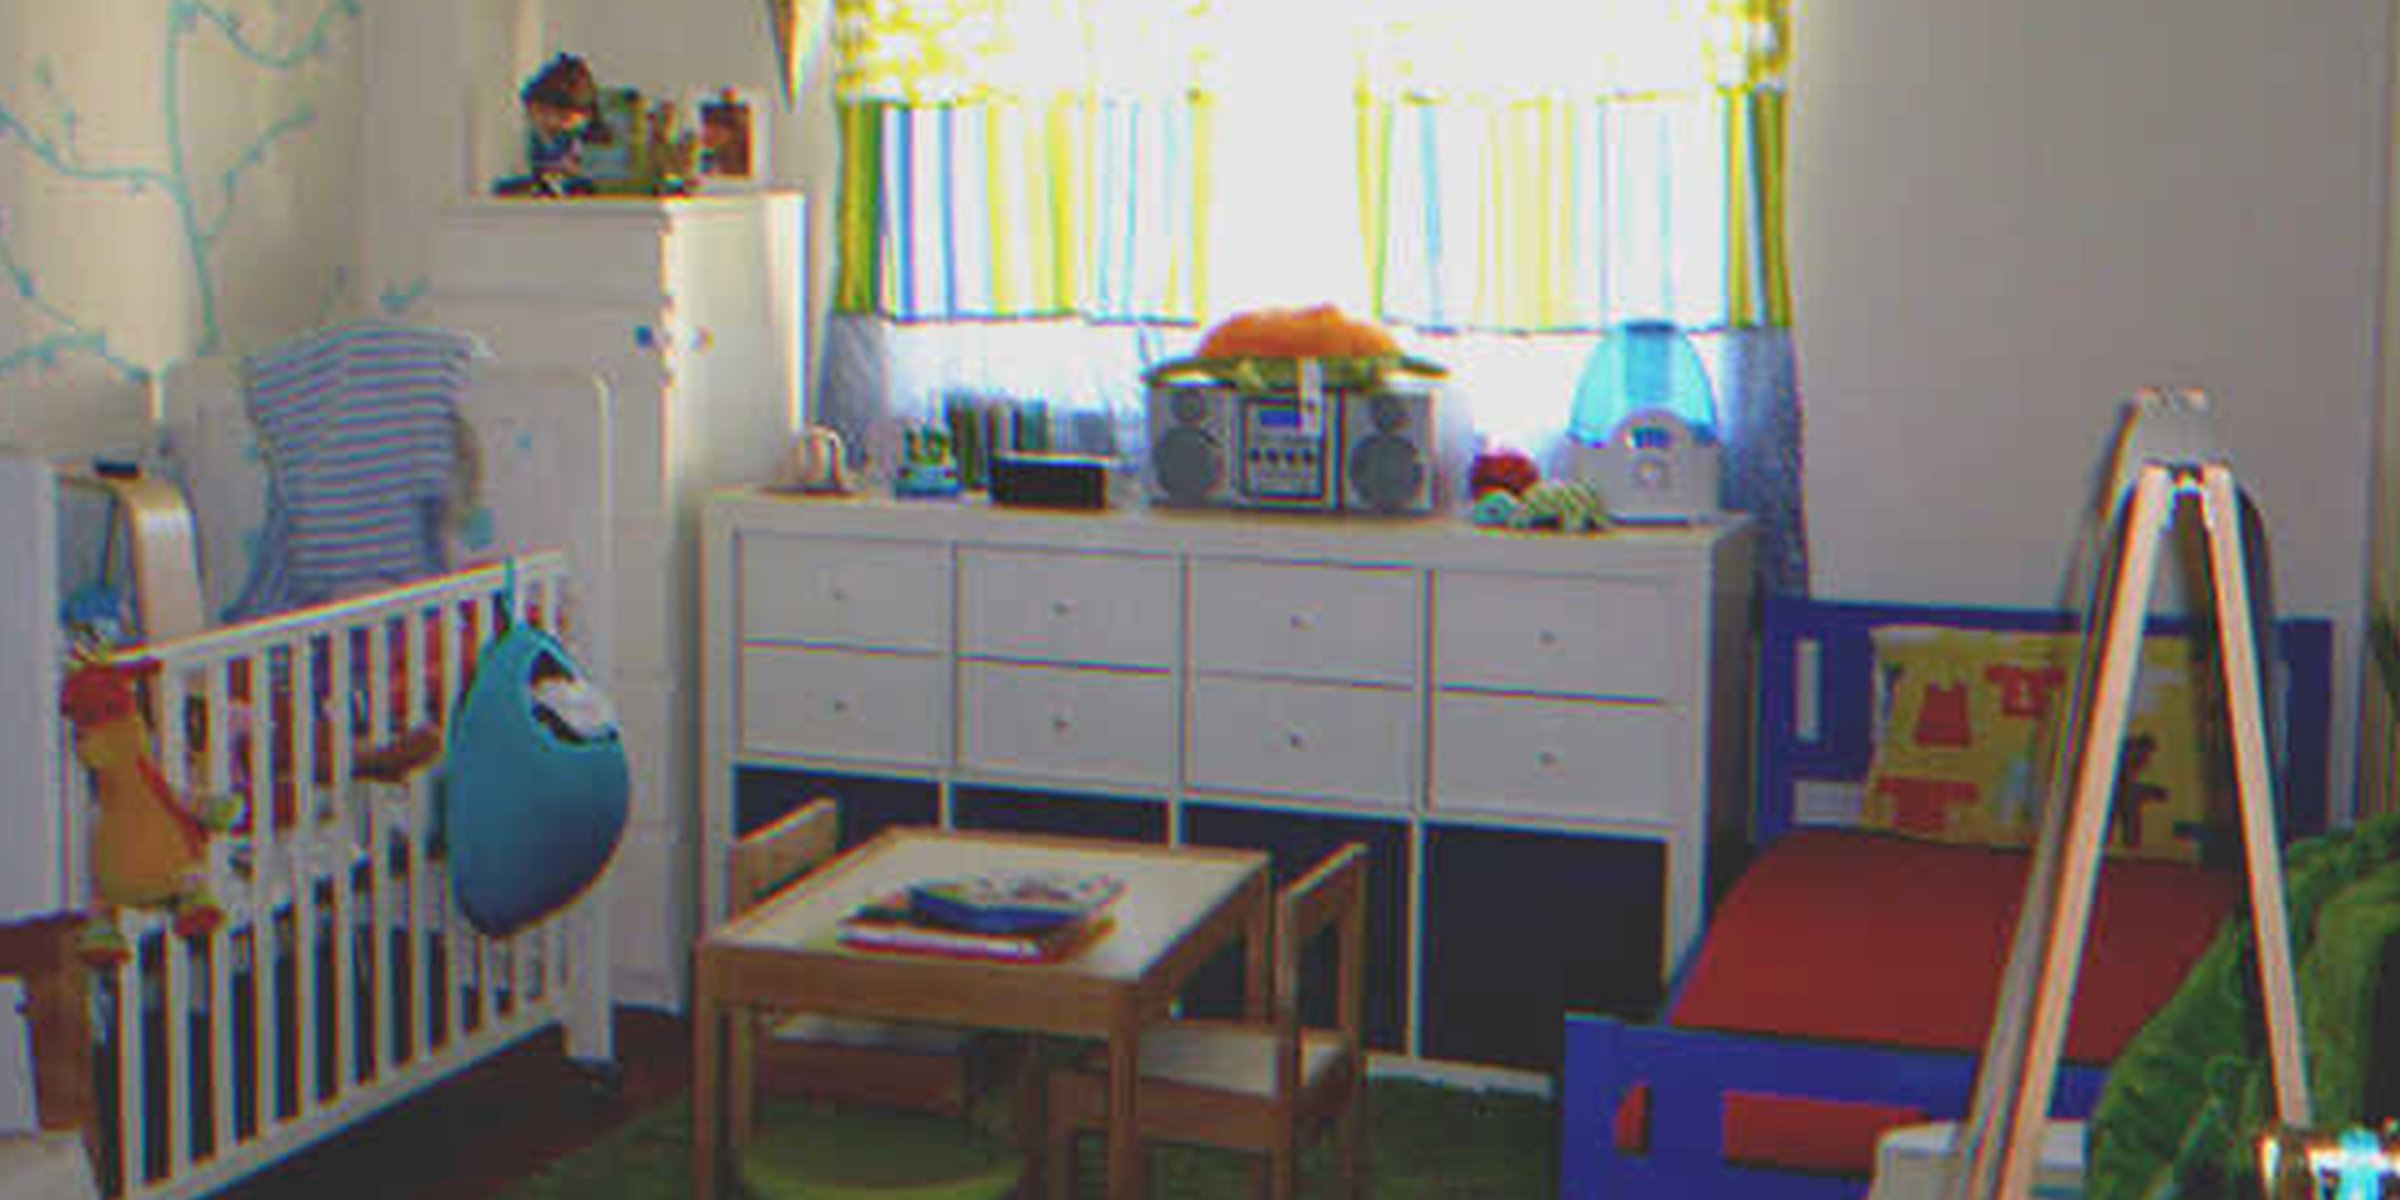 Una habitación infantil | Foto: Flickr.com/Claudia Borralho